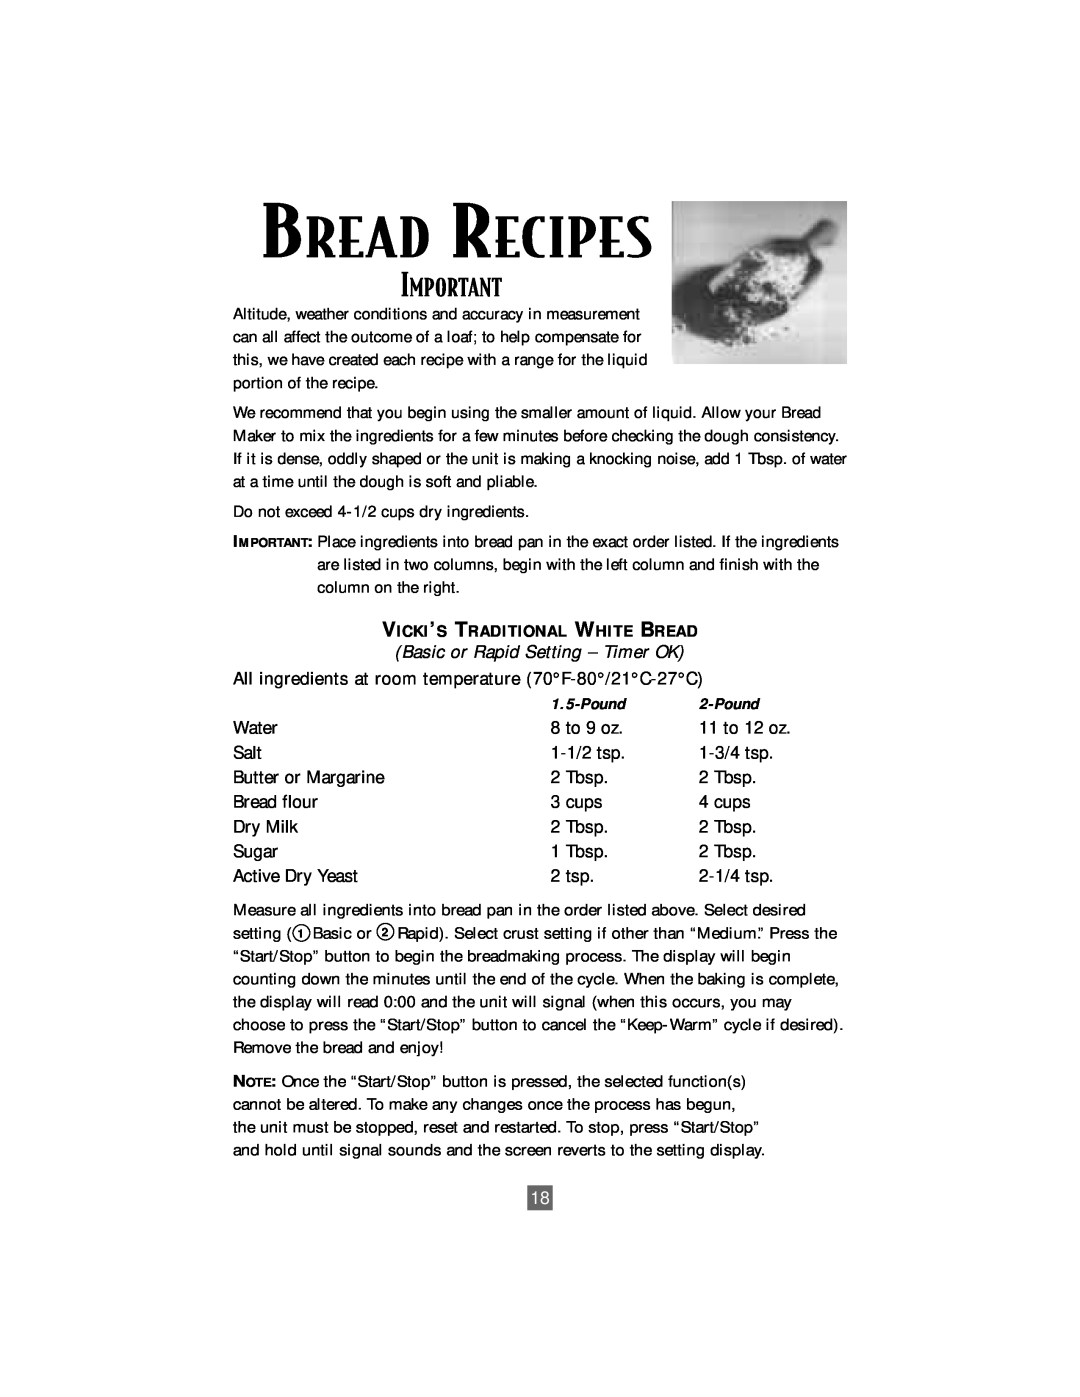 Sunbeam Deluxe 2-Pound Bread & Dough Maker manual Bread Recipes 